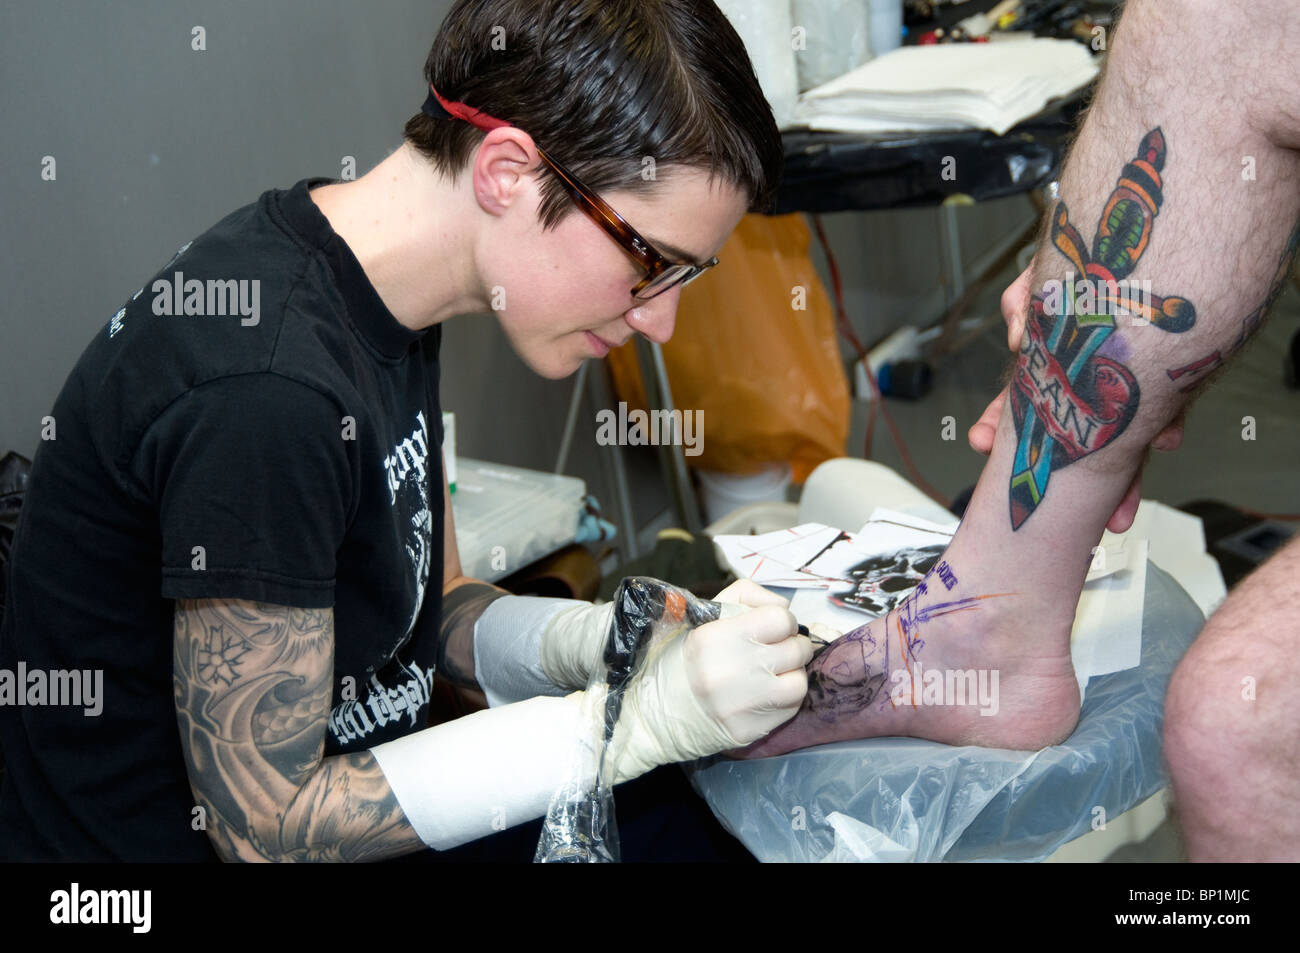 Les images de la désormais célèbre événement de bourrage de tatouage dans Doncaster UK montrant les tatoueurs au travail et les personnes avec des tatouages et dans la scène de tatouage Banque D'Images